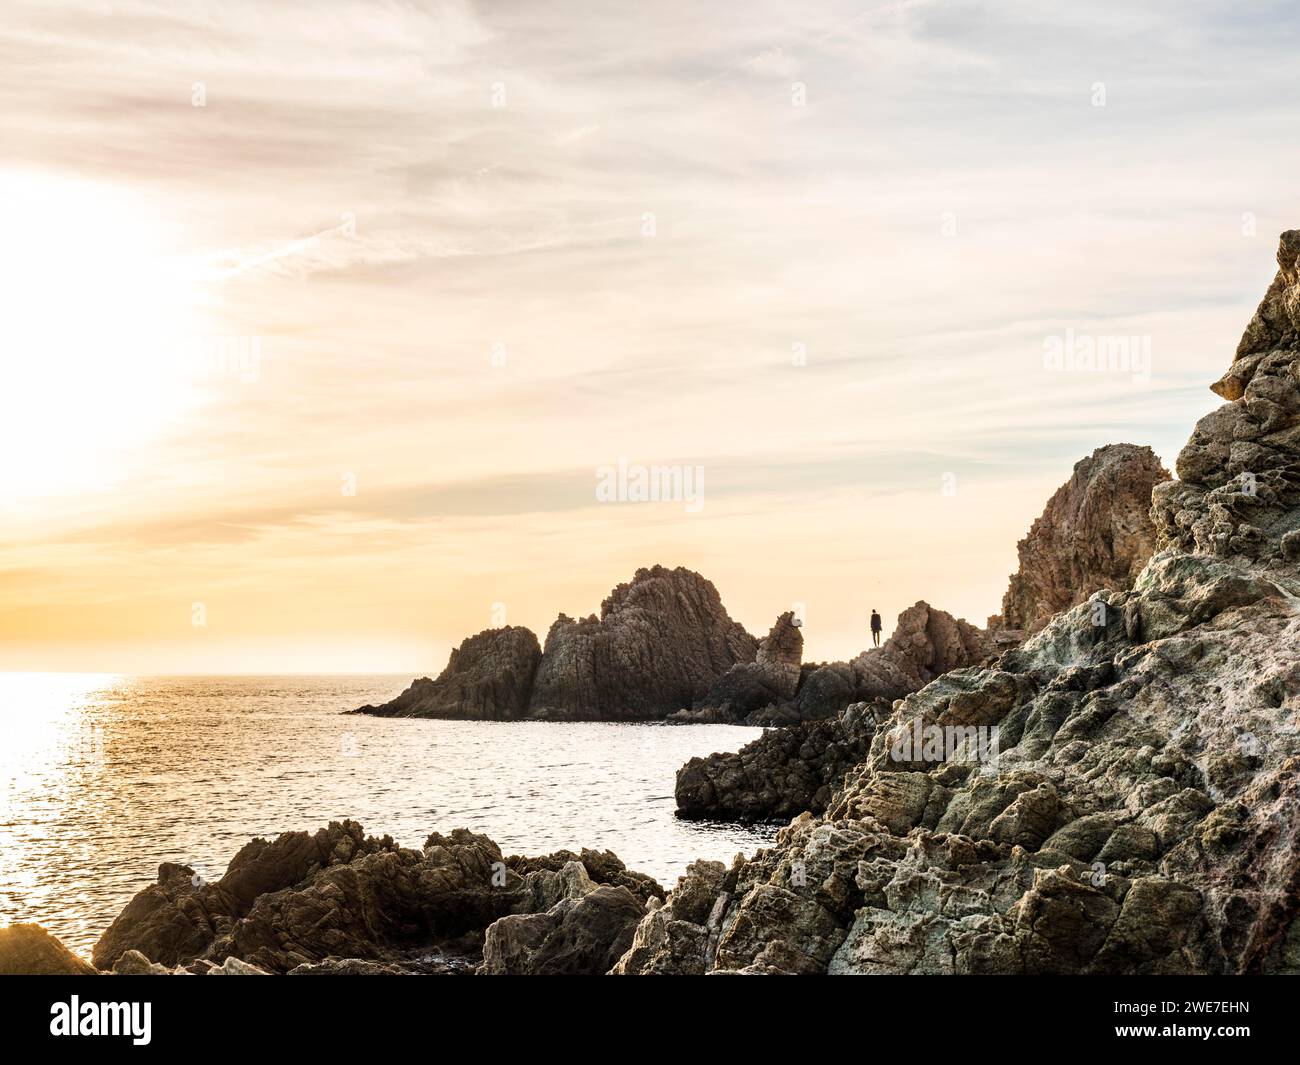 Beau paysage du cap Gata avec des formations rocheuses dans l'eau au coucher du soleil, Almeria, Andalousie, Espagne Banque D'Images